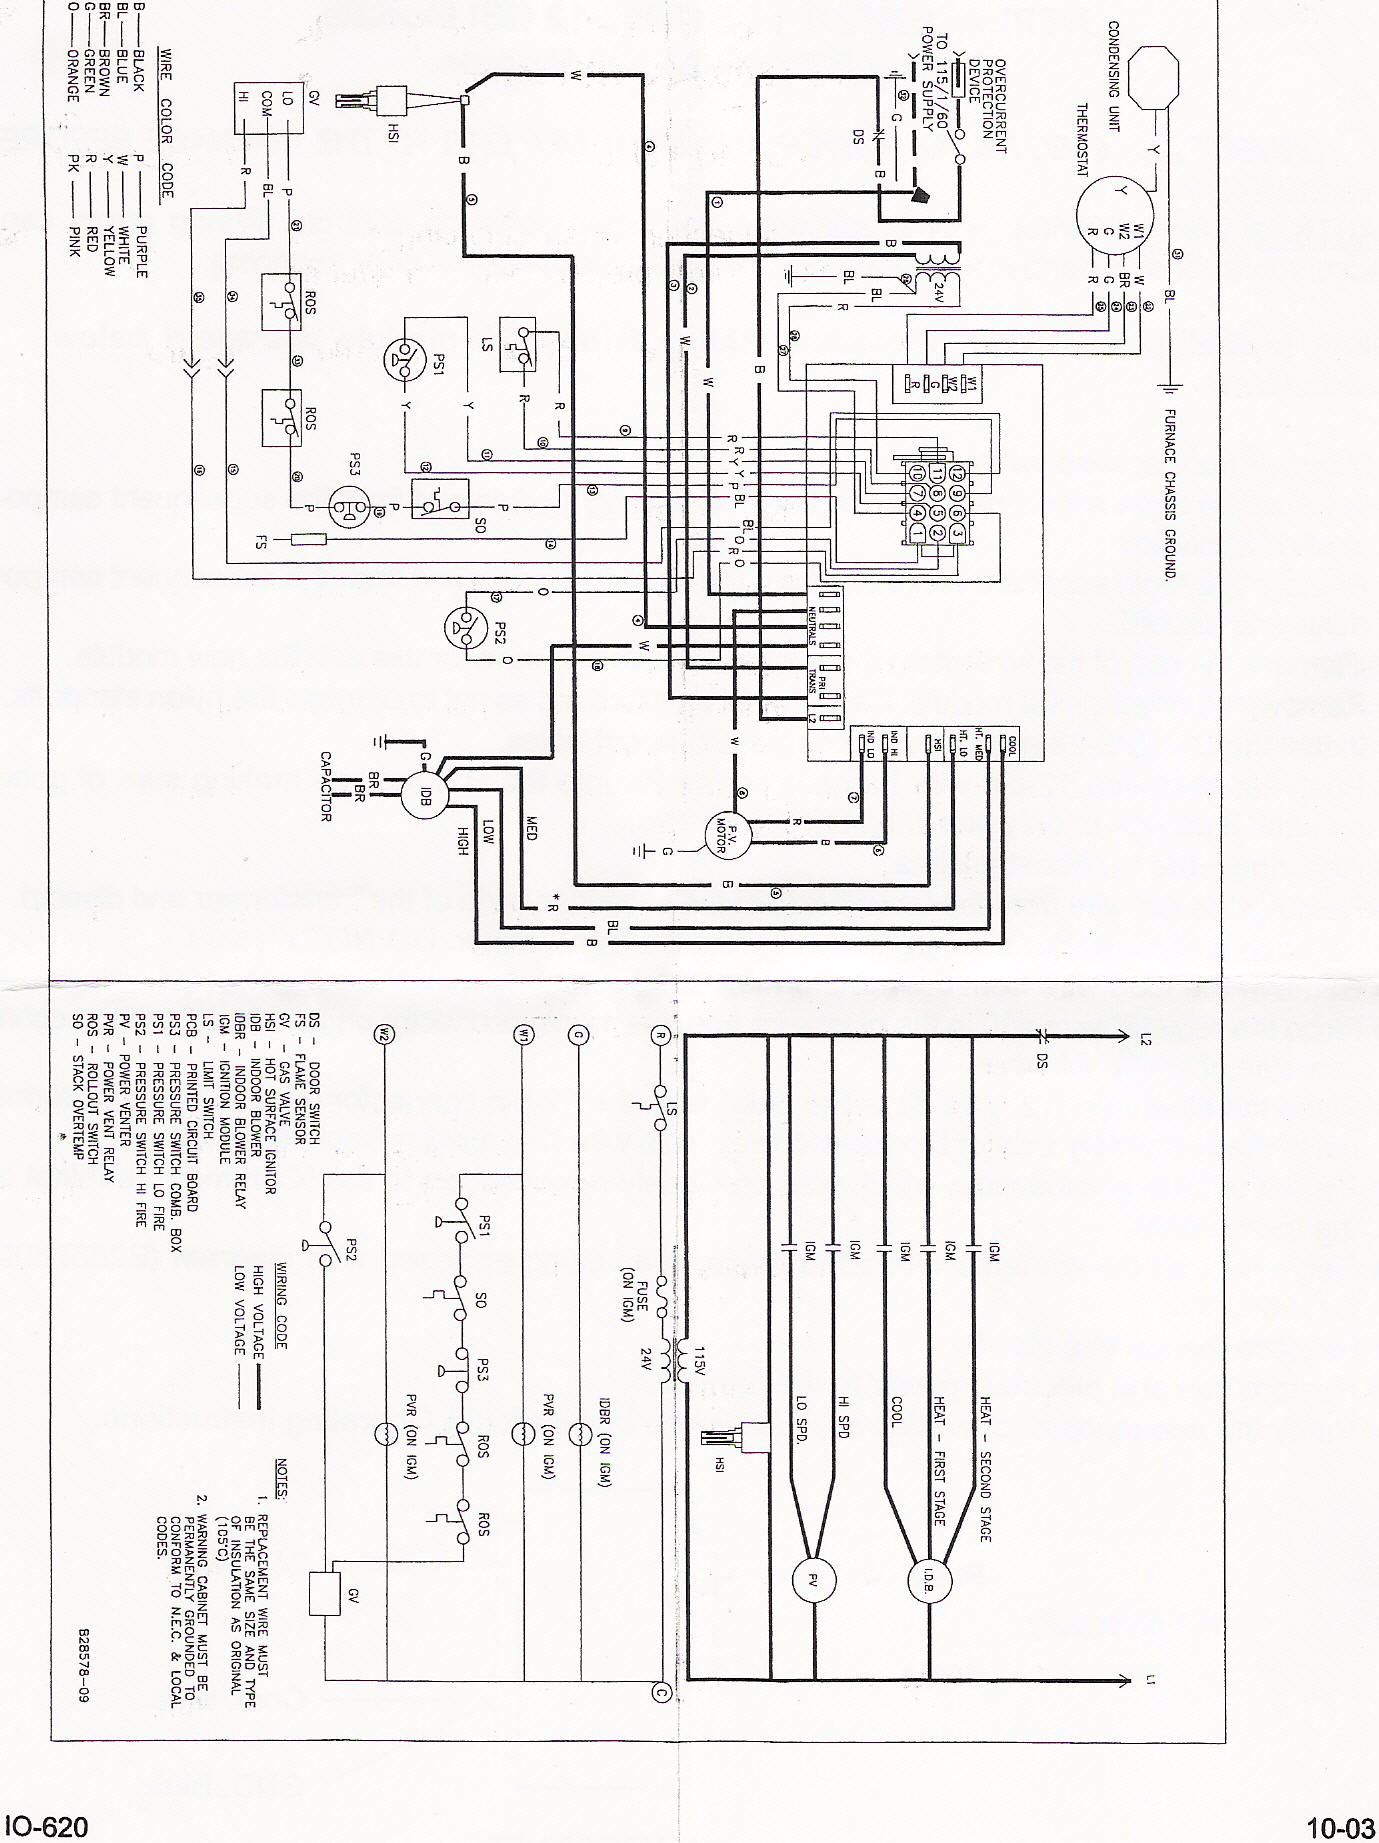 Trane Hvac System Wiring Diagram - Wiring Diagram Explained - Trane Voyager Wiring Diagram